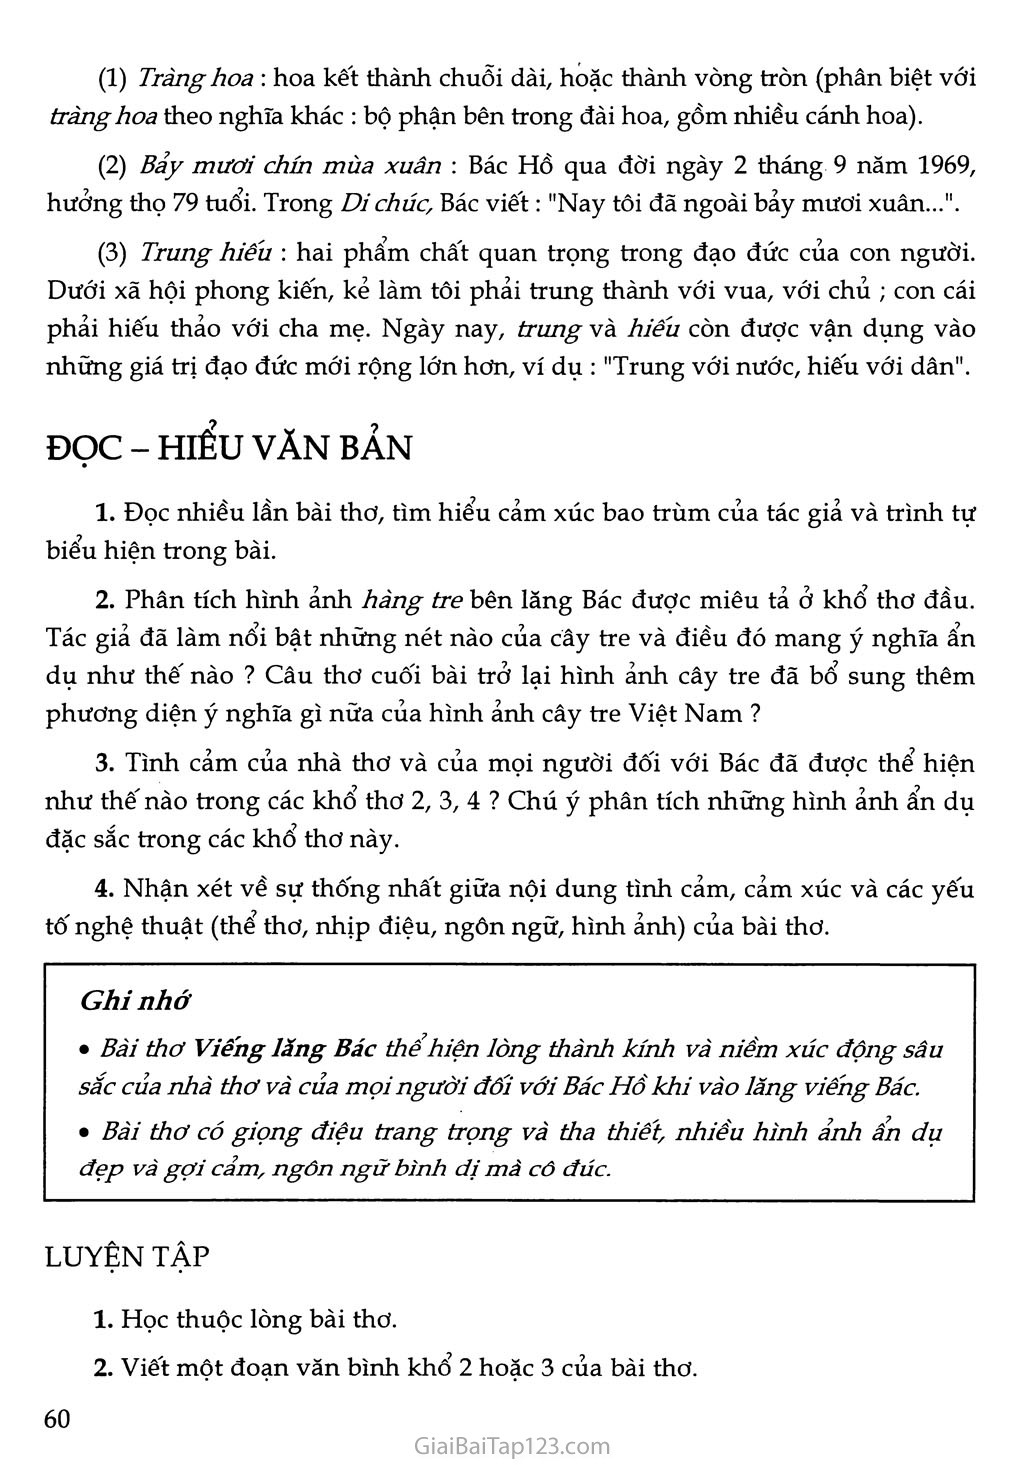 SGK Ngữ Văn 9 cùng với cây tre và viếng lăng Bác - một bức tranh đầy tình cảm và cảm động. Hãy xem hình ảnh này để hiểu thêm về tác giả và thế giới văn học Việt Nam đầy thú vị.